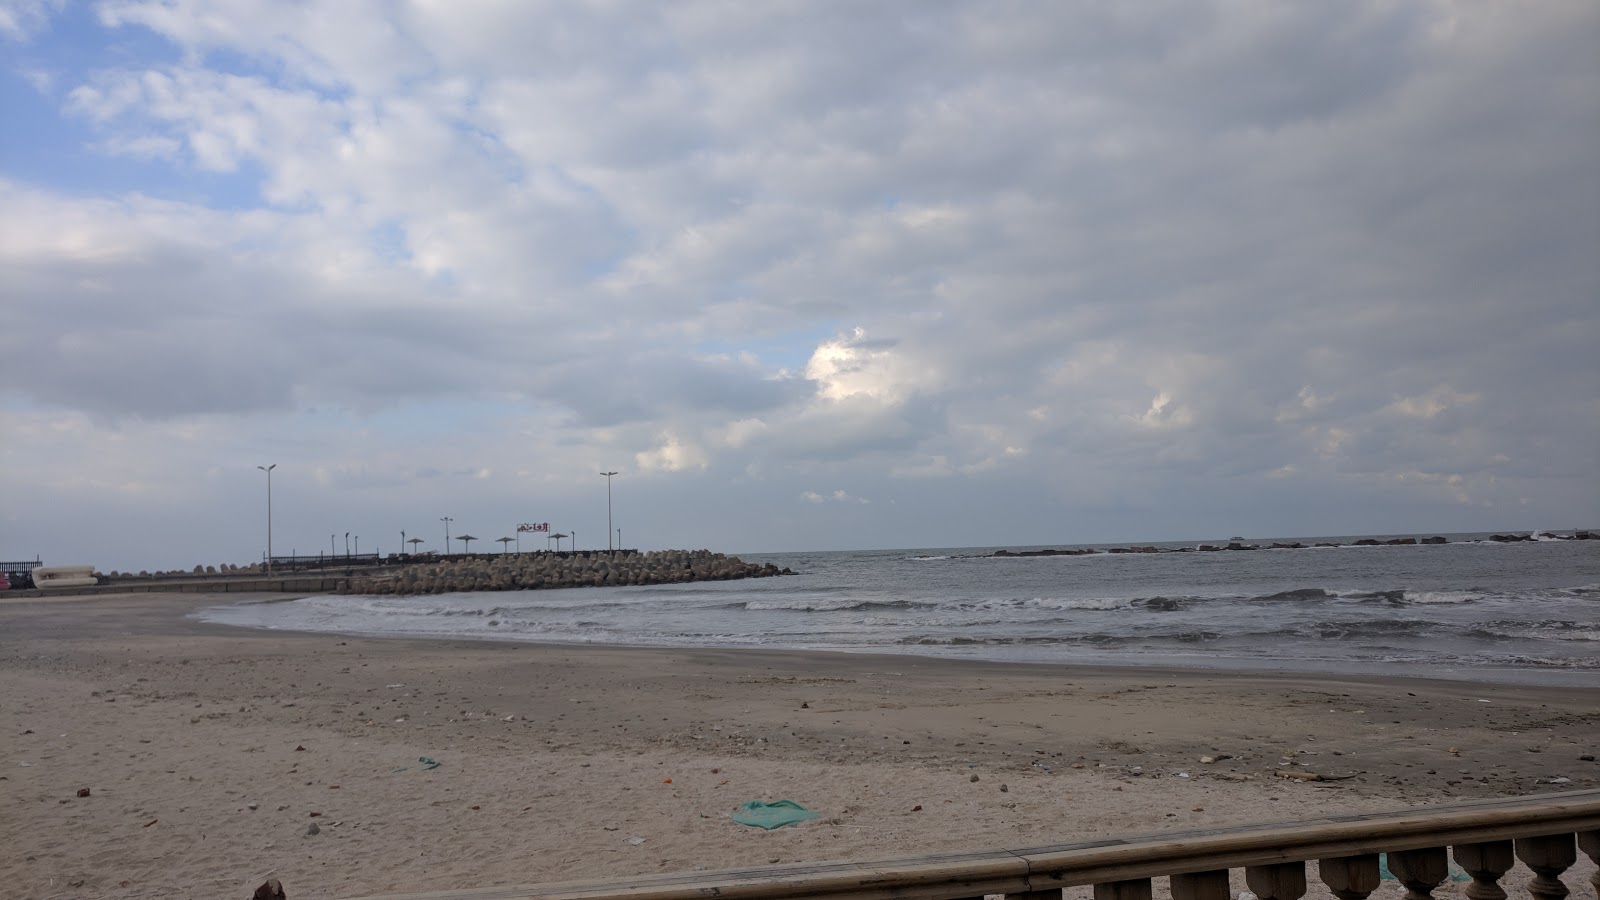 Gulf Beach'in fotoğrafı doğrudan plaj ile birlikte